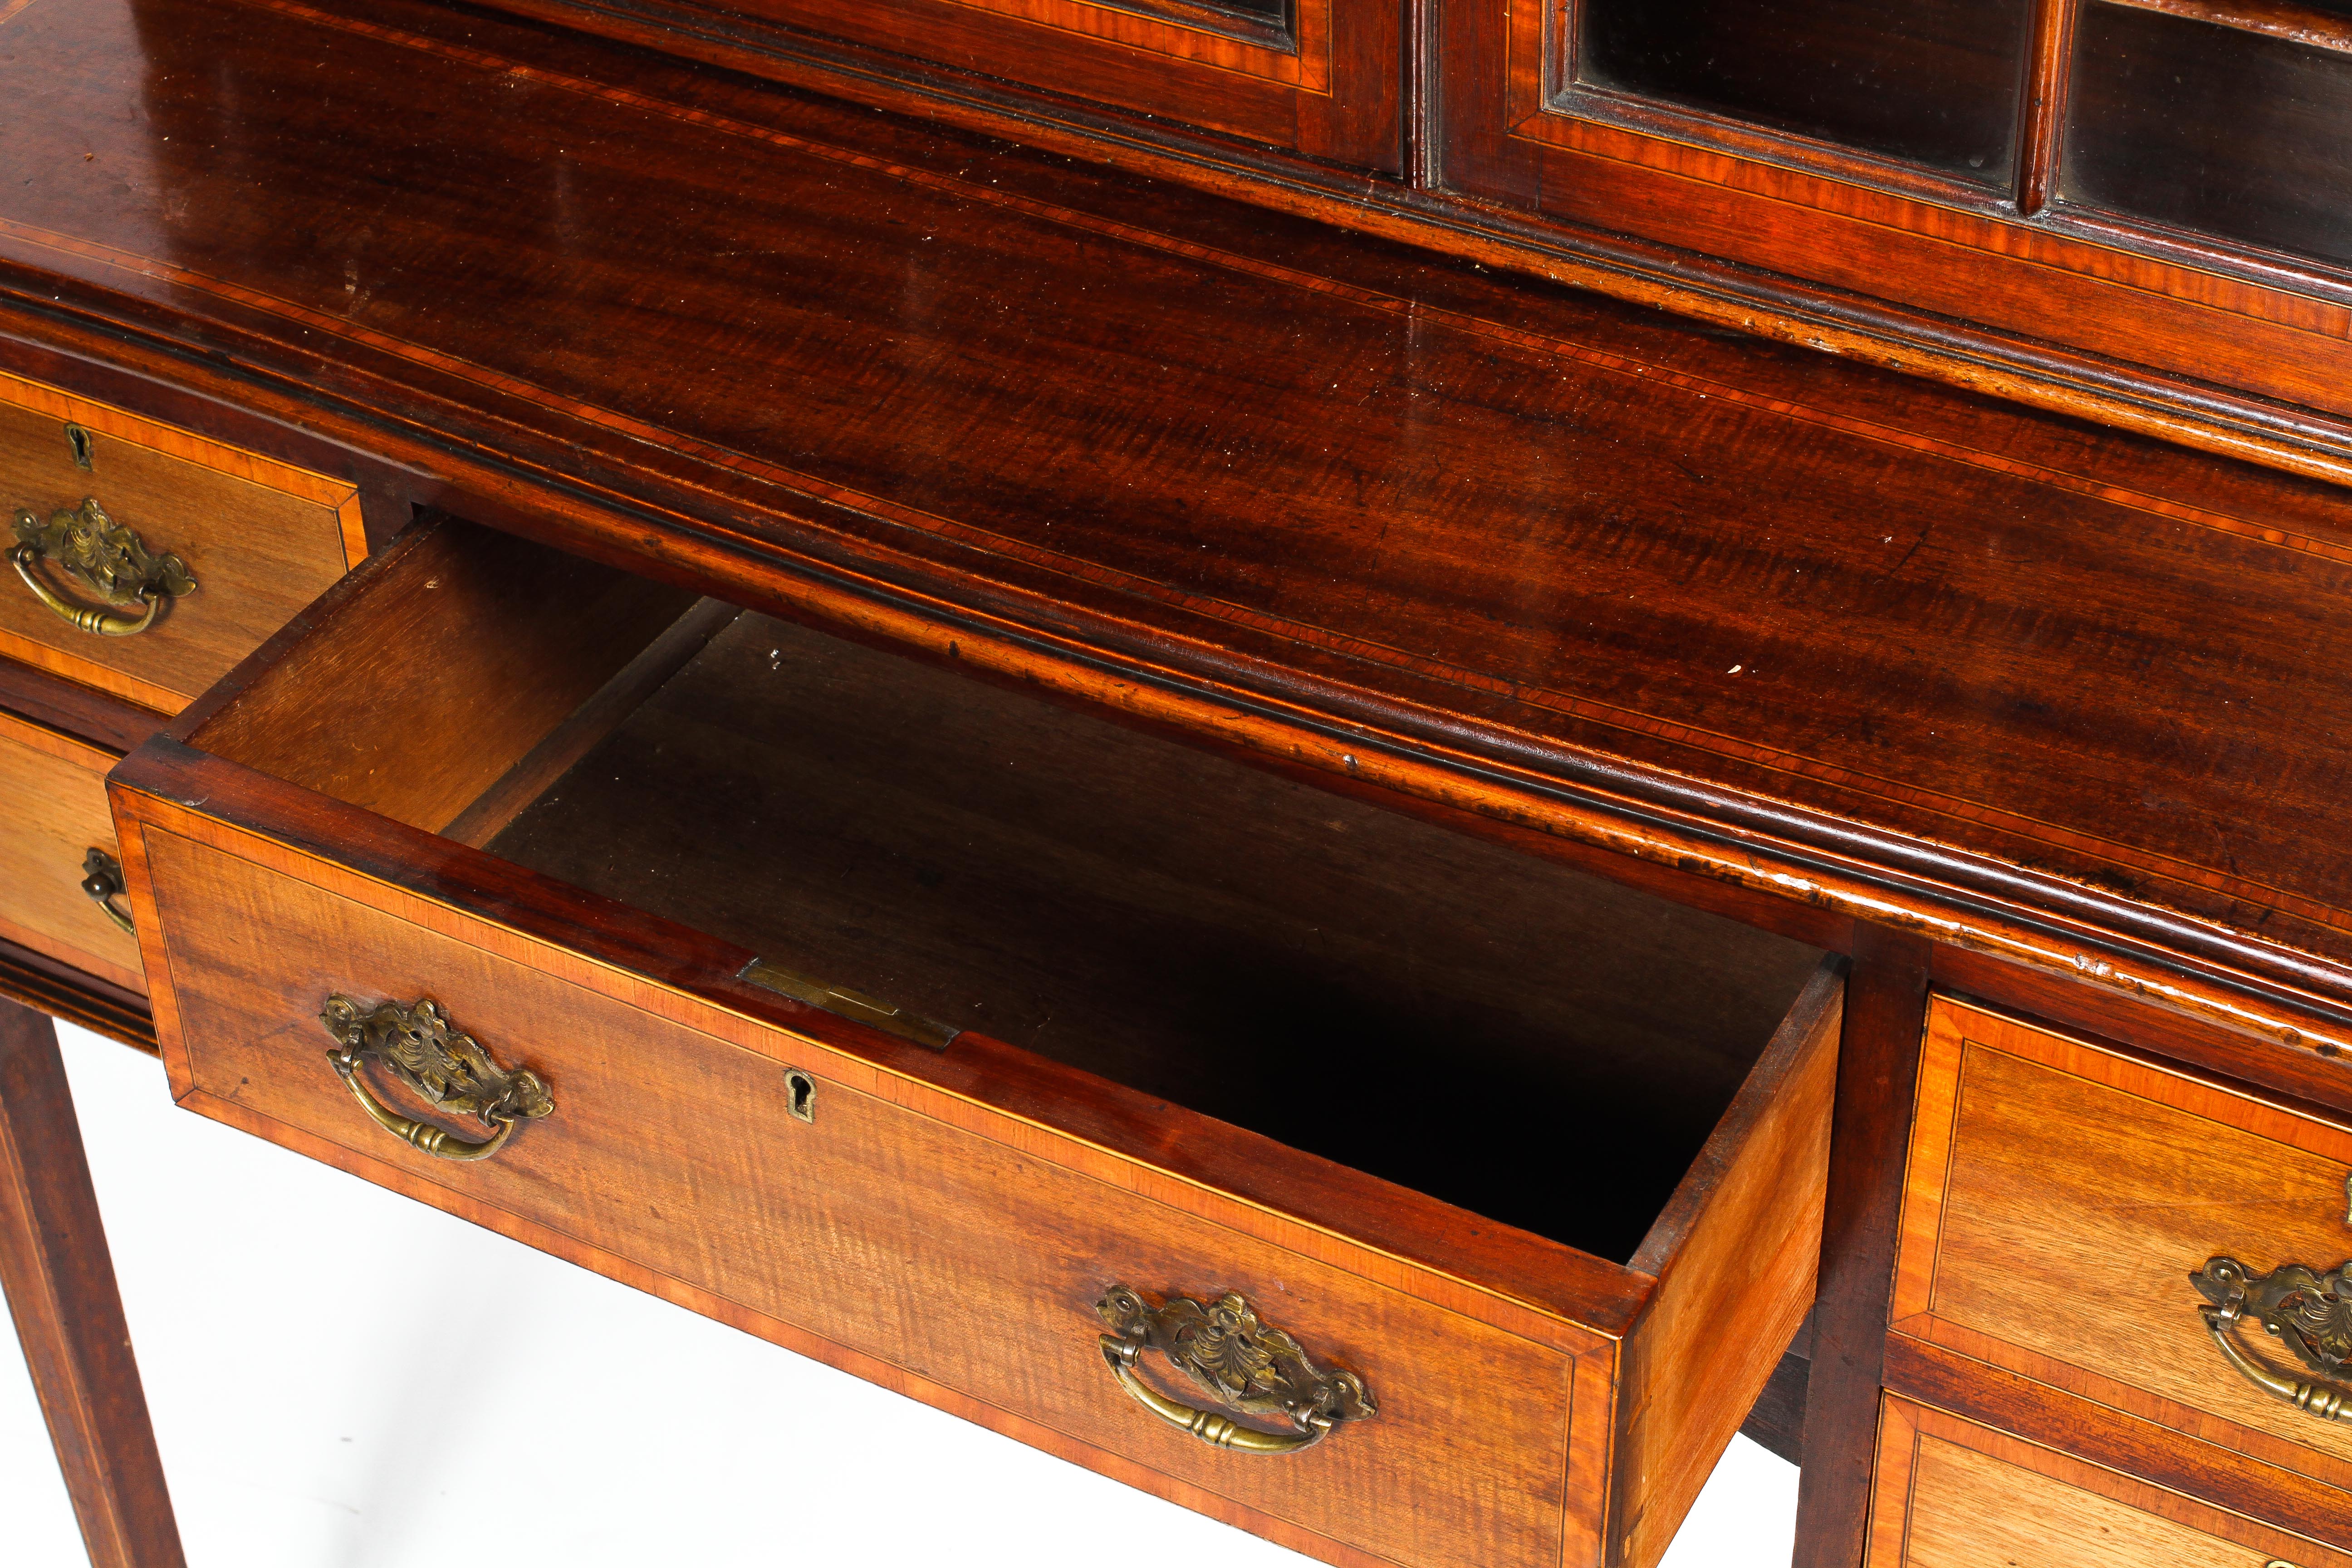 An Edwardian inlaid mahogany astragal glazed bookcase-writing desk. - Image 2 of 3